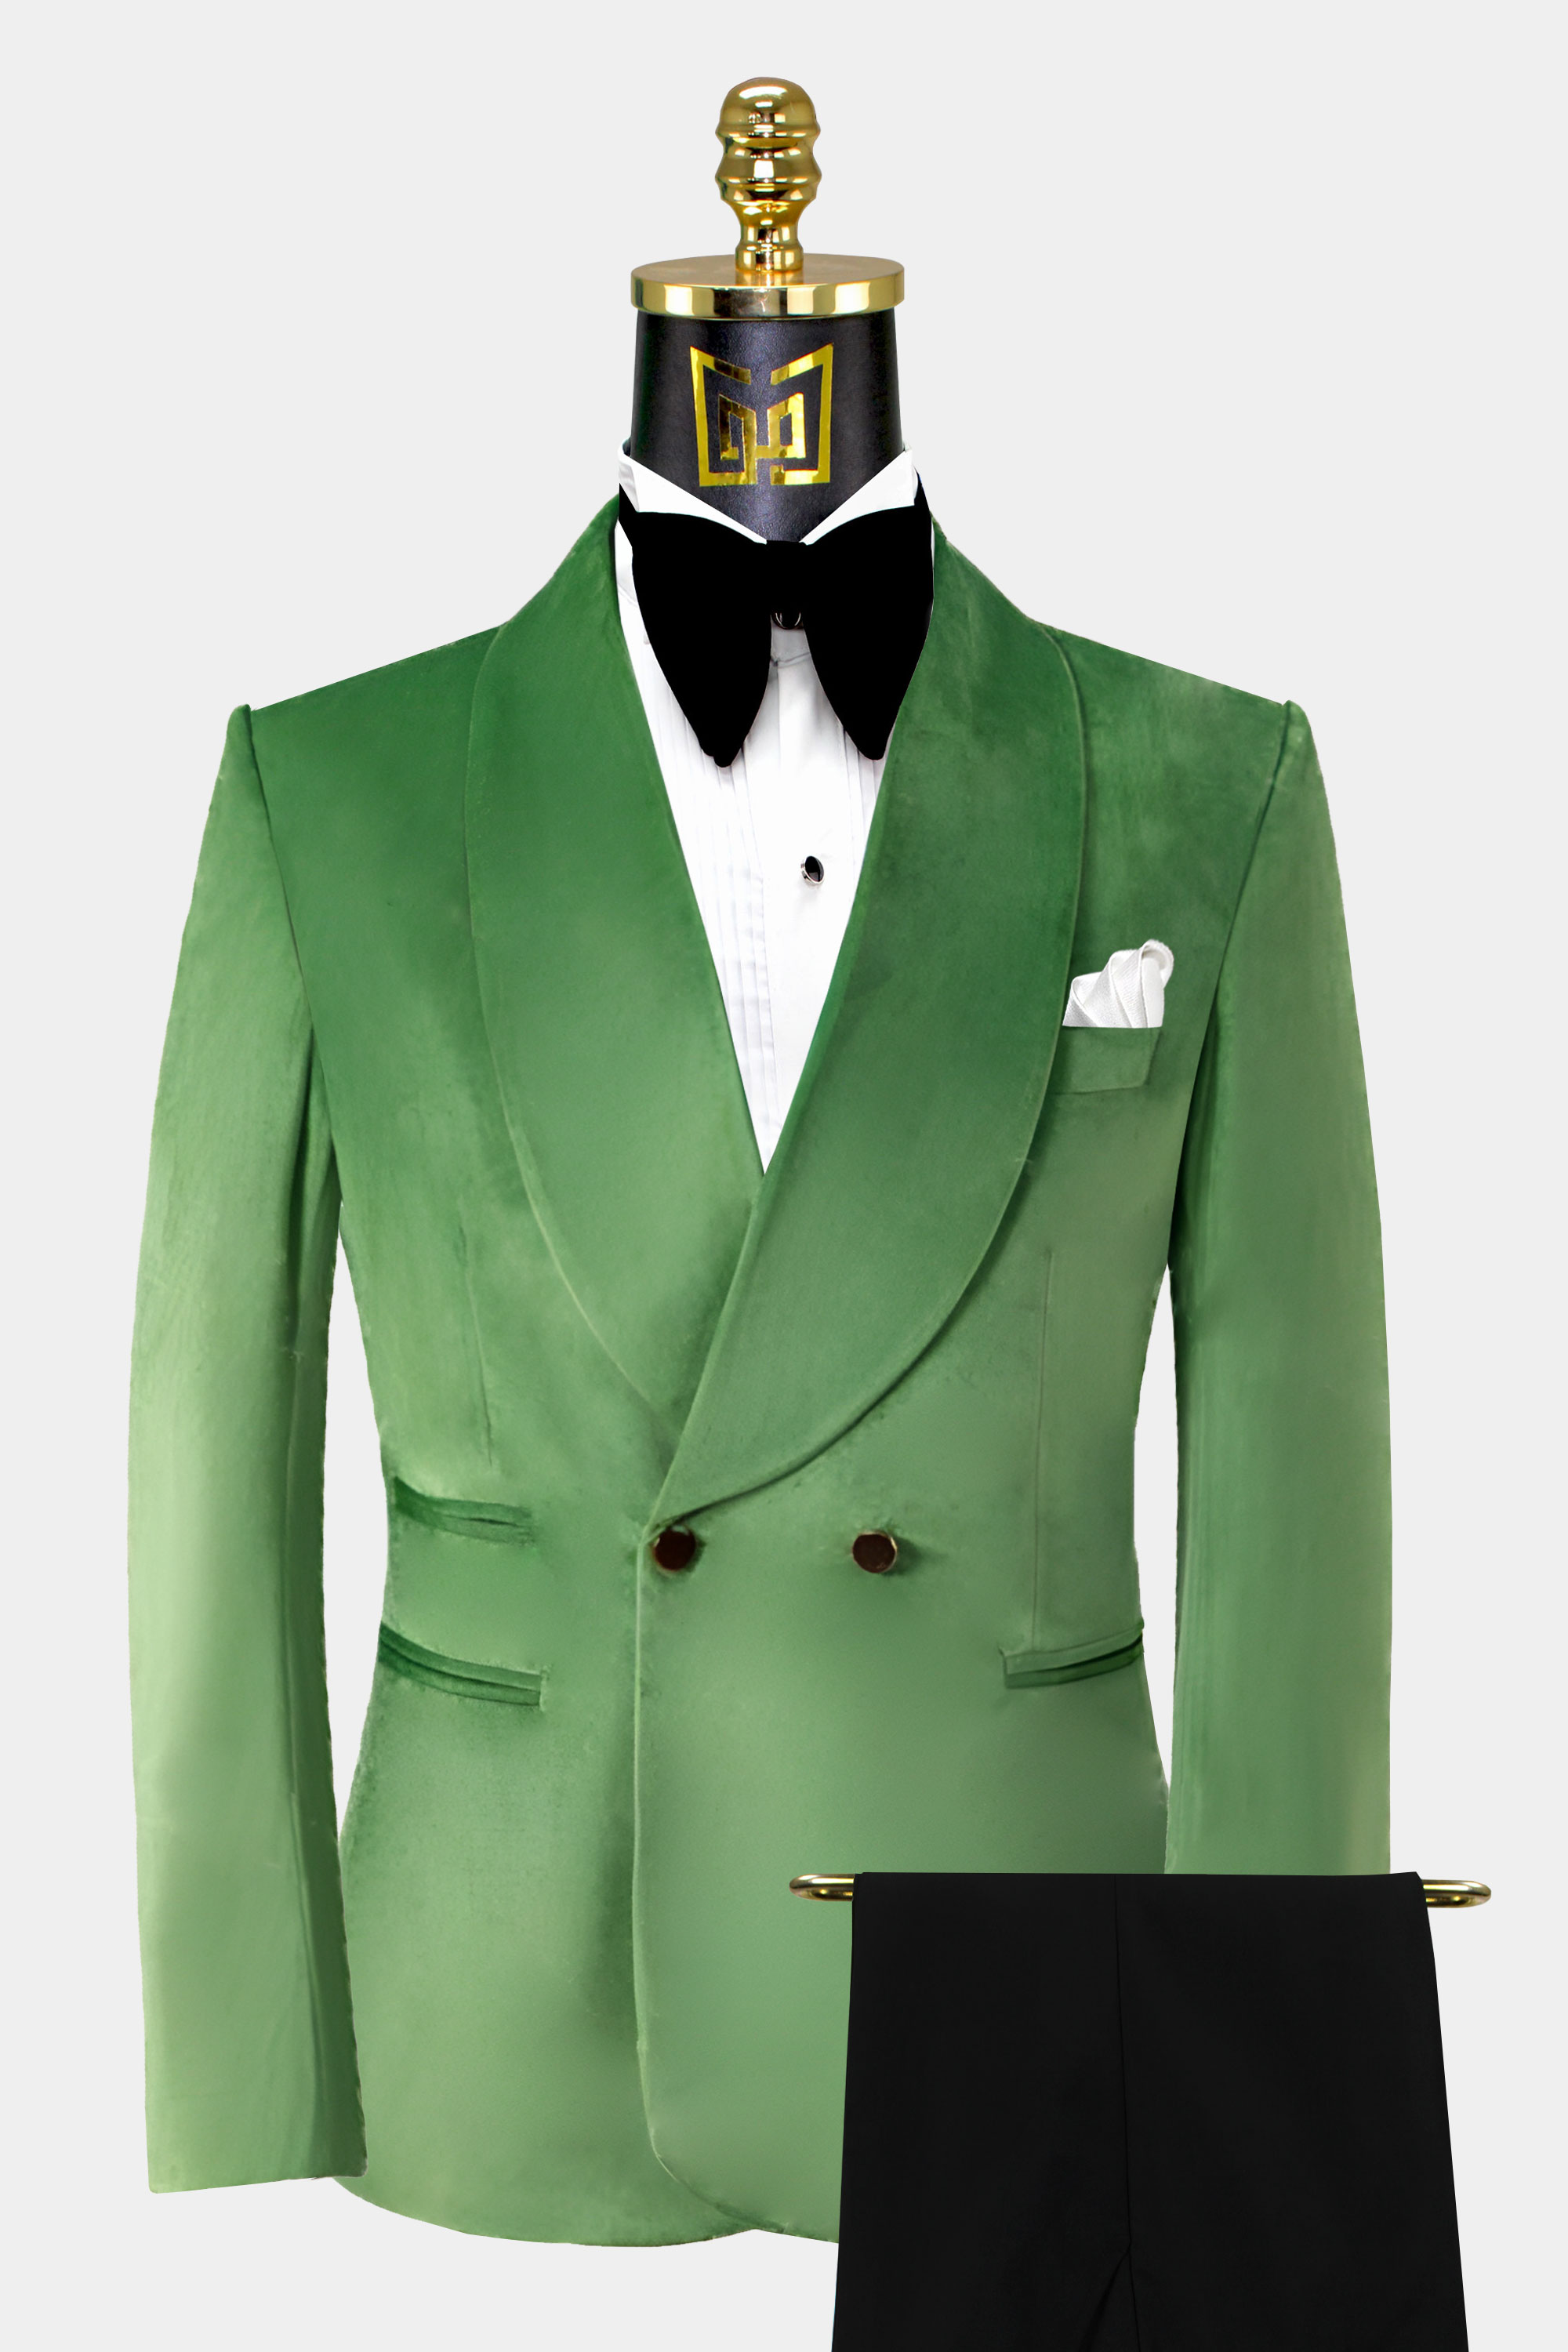 Black-and-Green-Velvet-Tuxedo-Groom-Wedding-Suit-from-Gentlemansguru.com